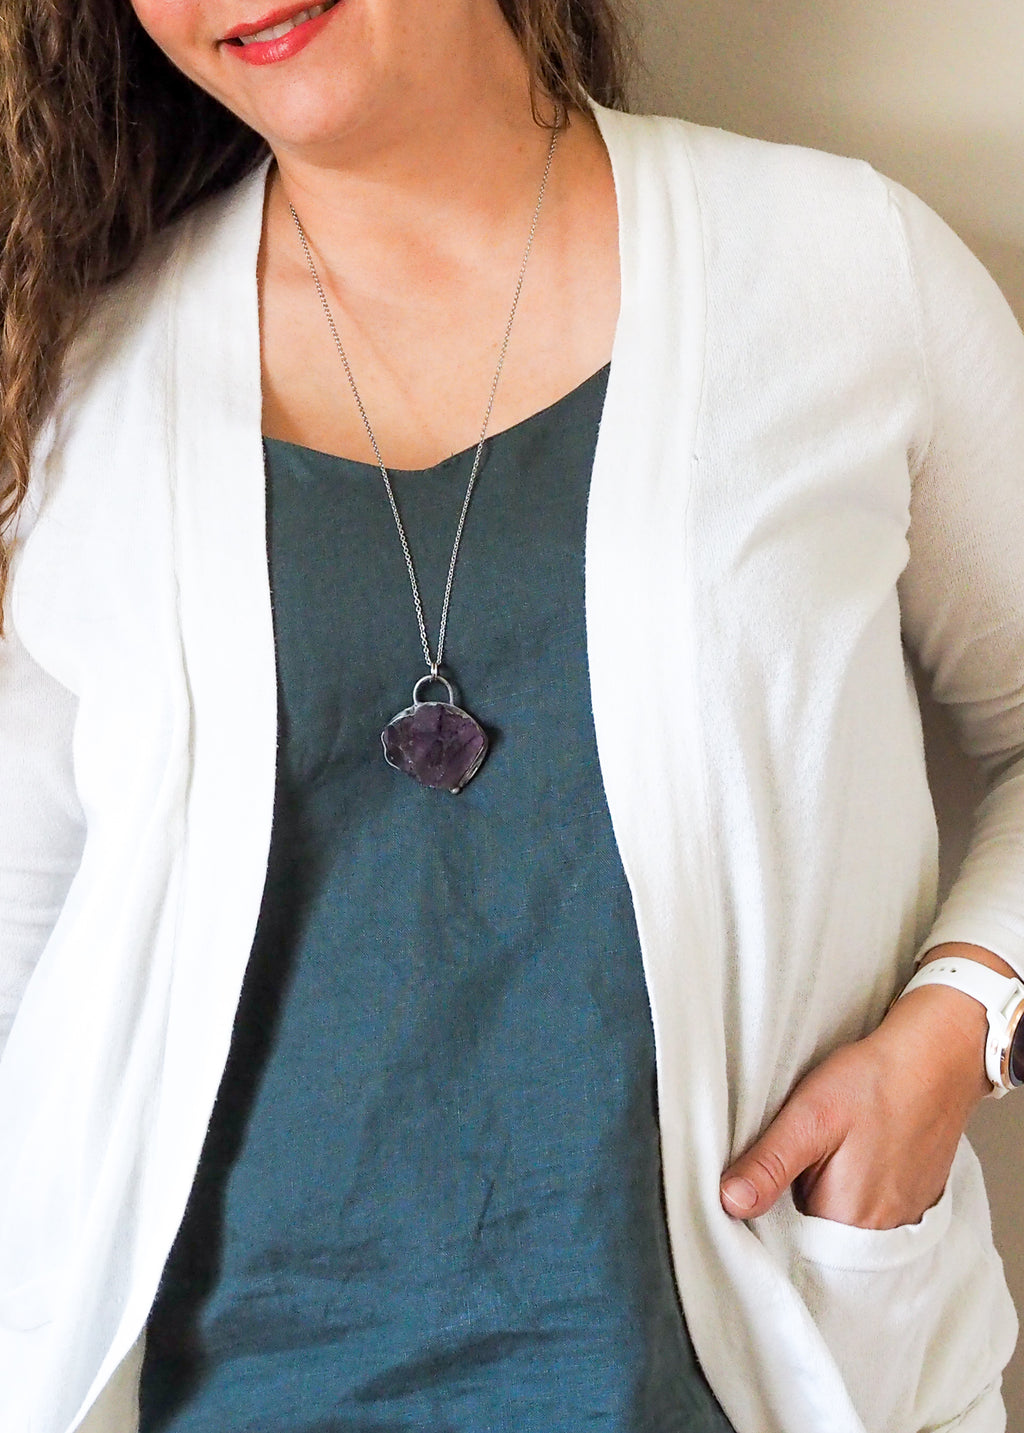 raw purple fluorite crystal talisman necklace woman in blue top